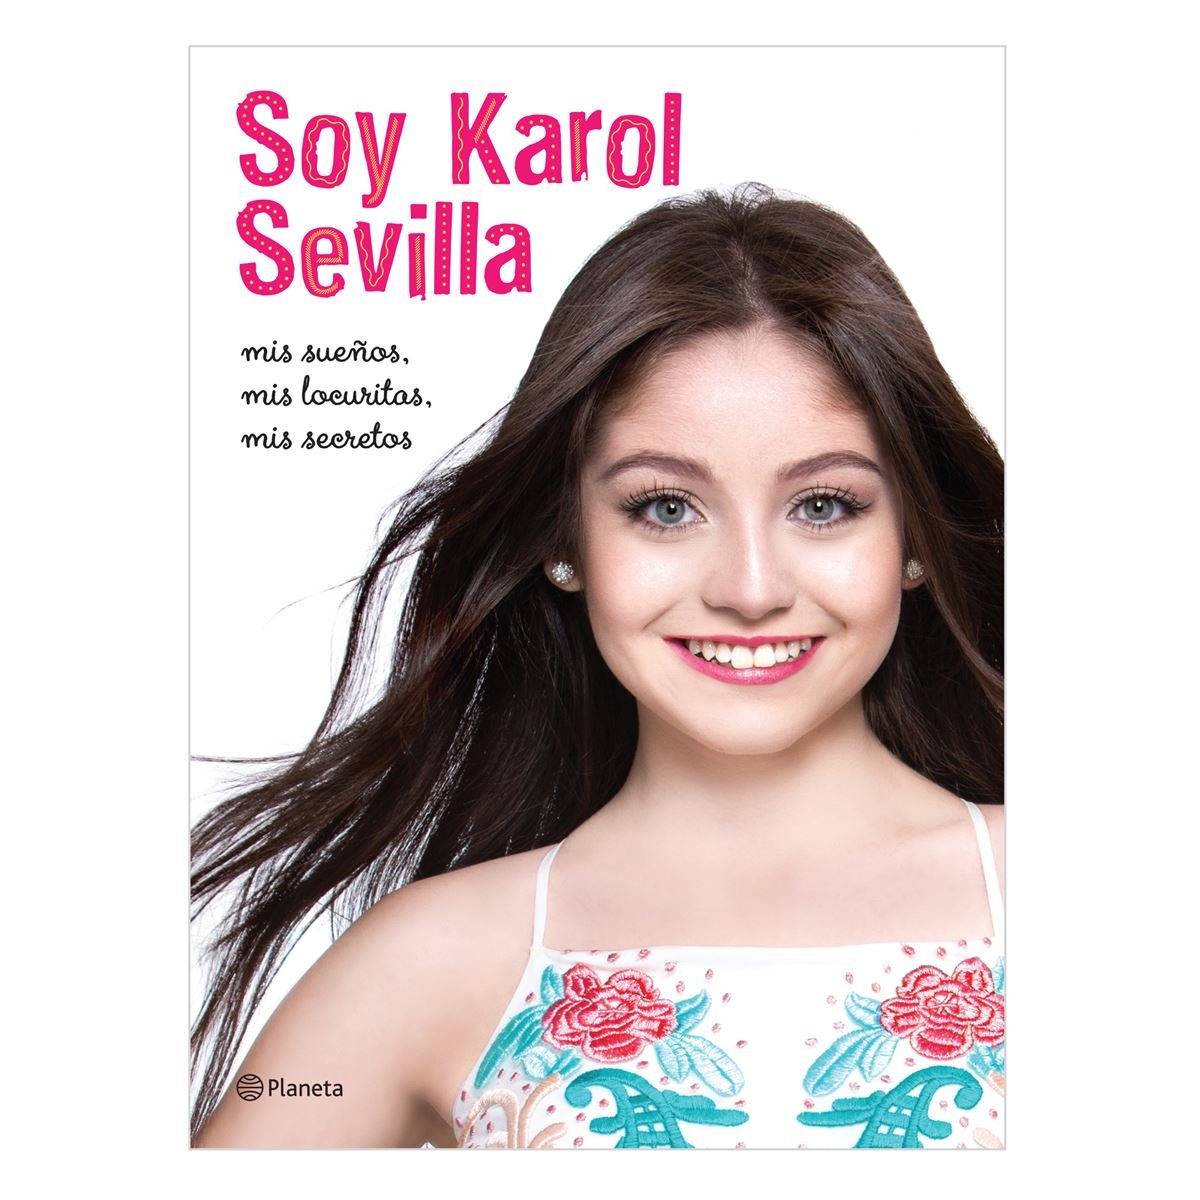 Soy Karol Sevilla